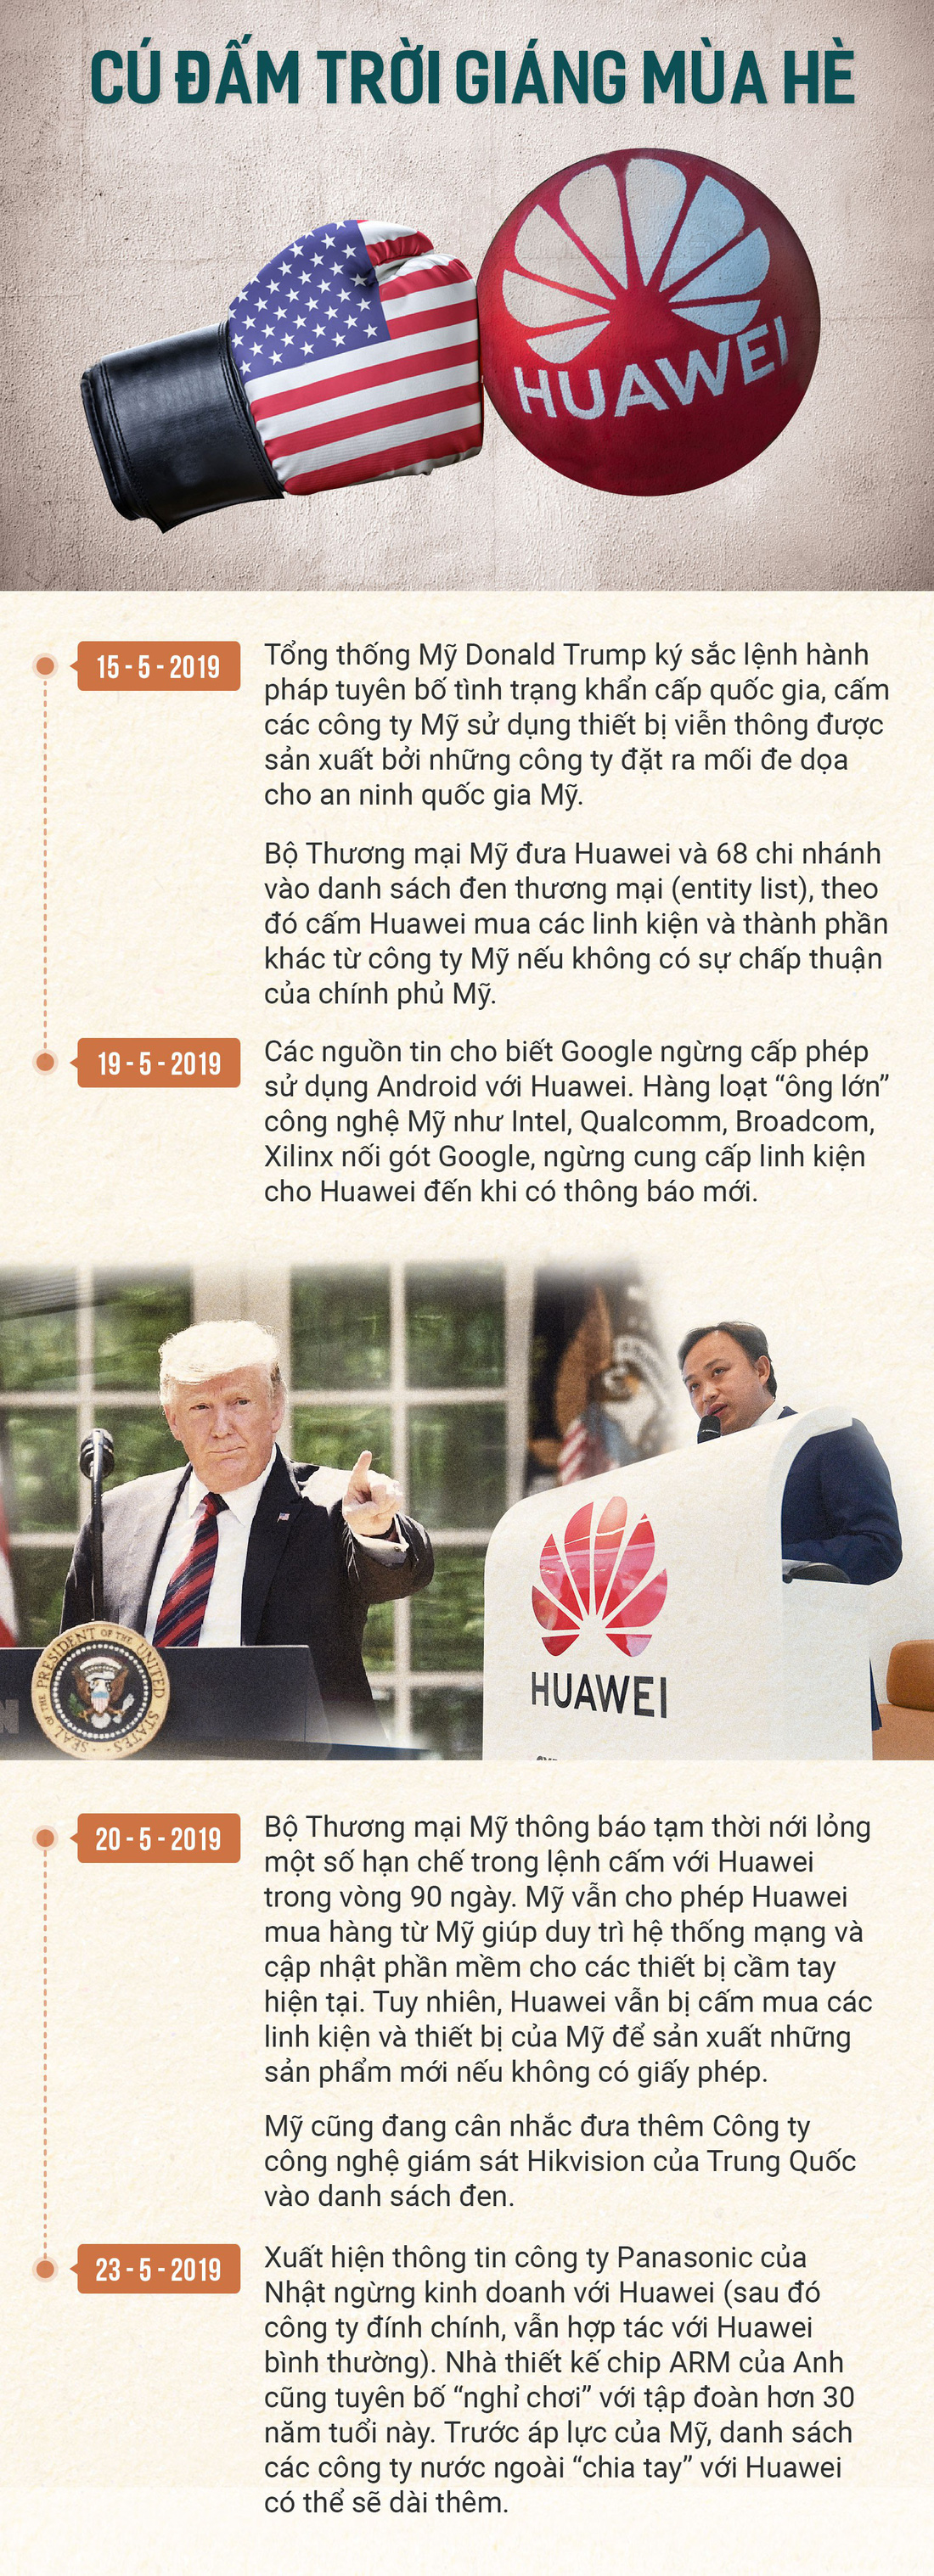 Toàn cảnh Mỹ đánh Huawei - Ảnh 2.